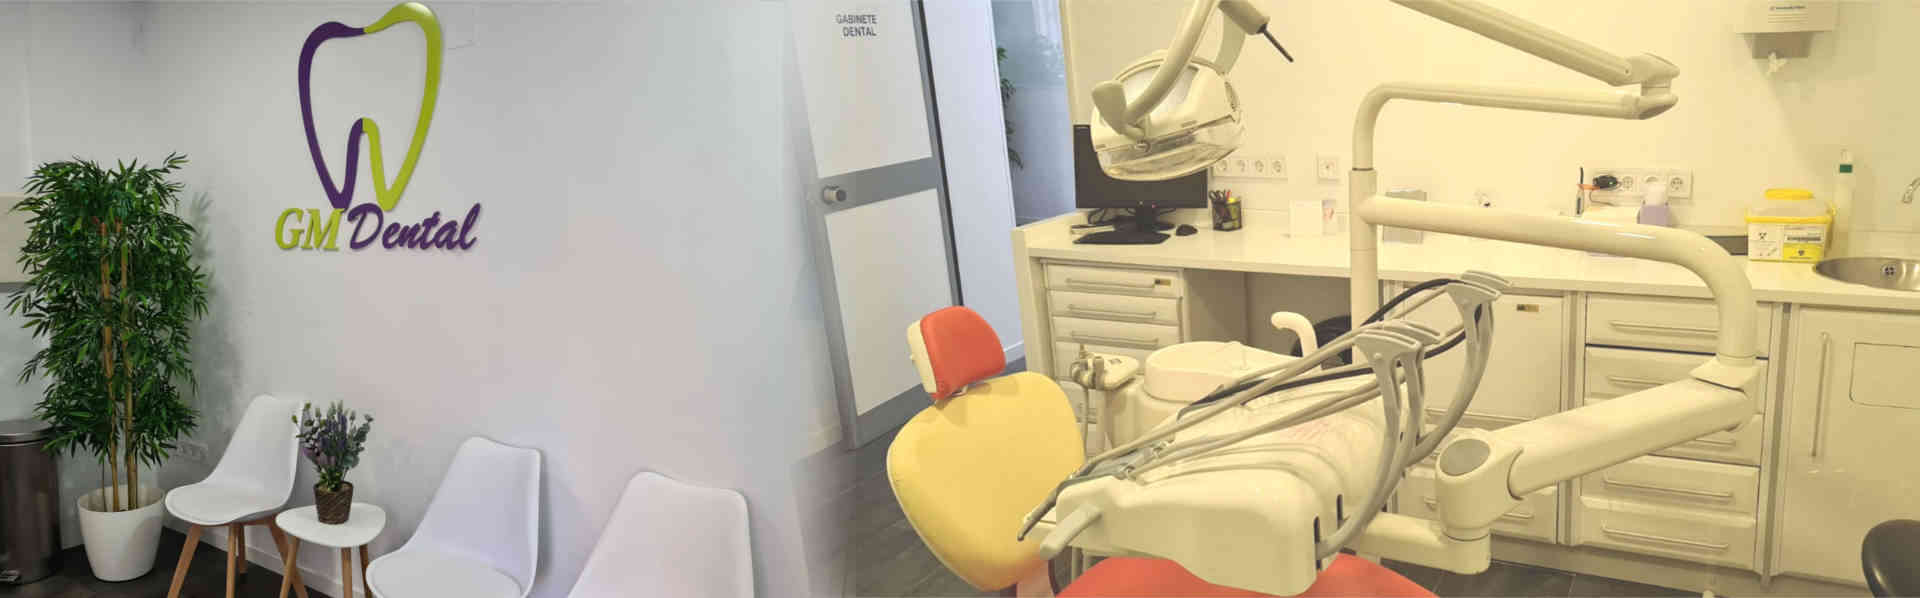 Clinica dental Alcobendas, GM Dental